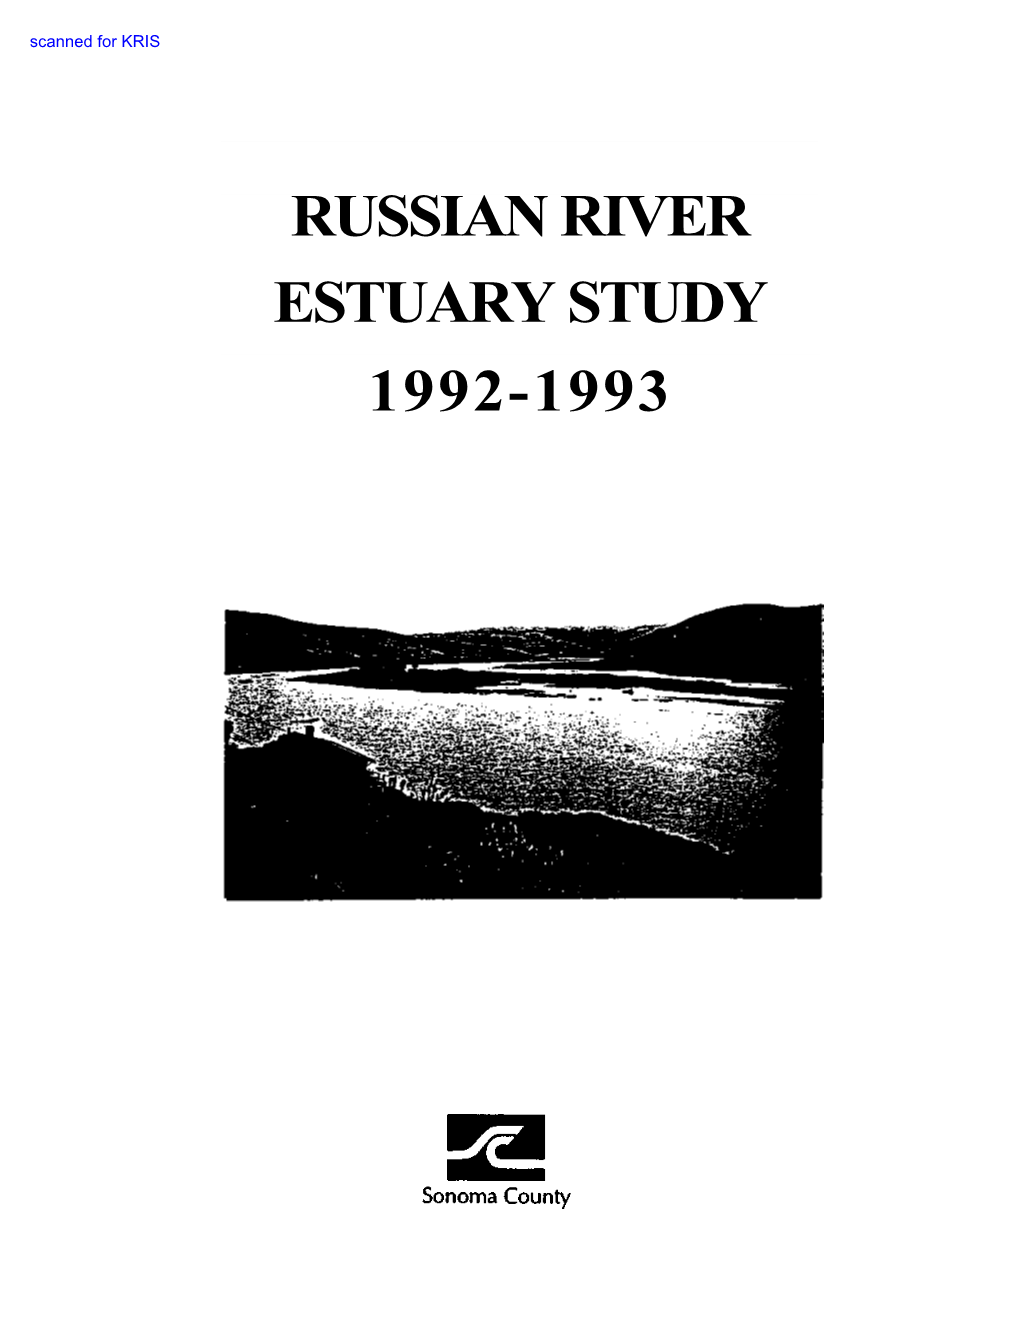 Russian River Estuary Study